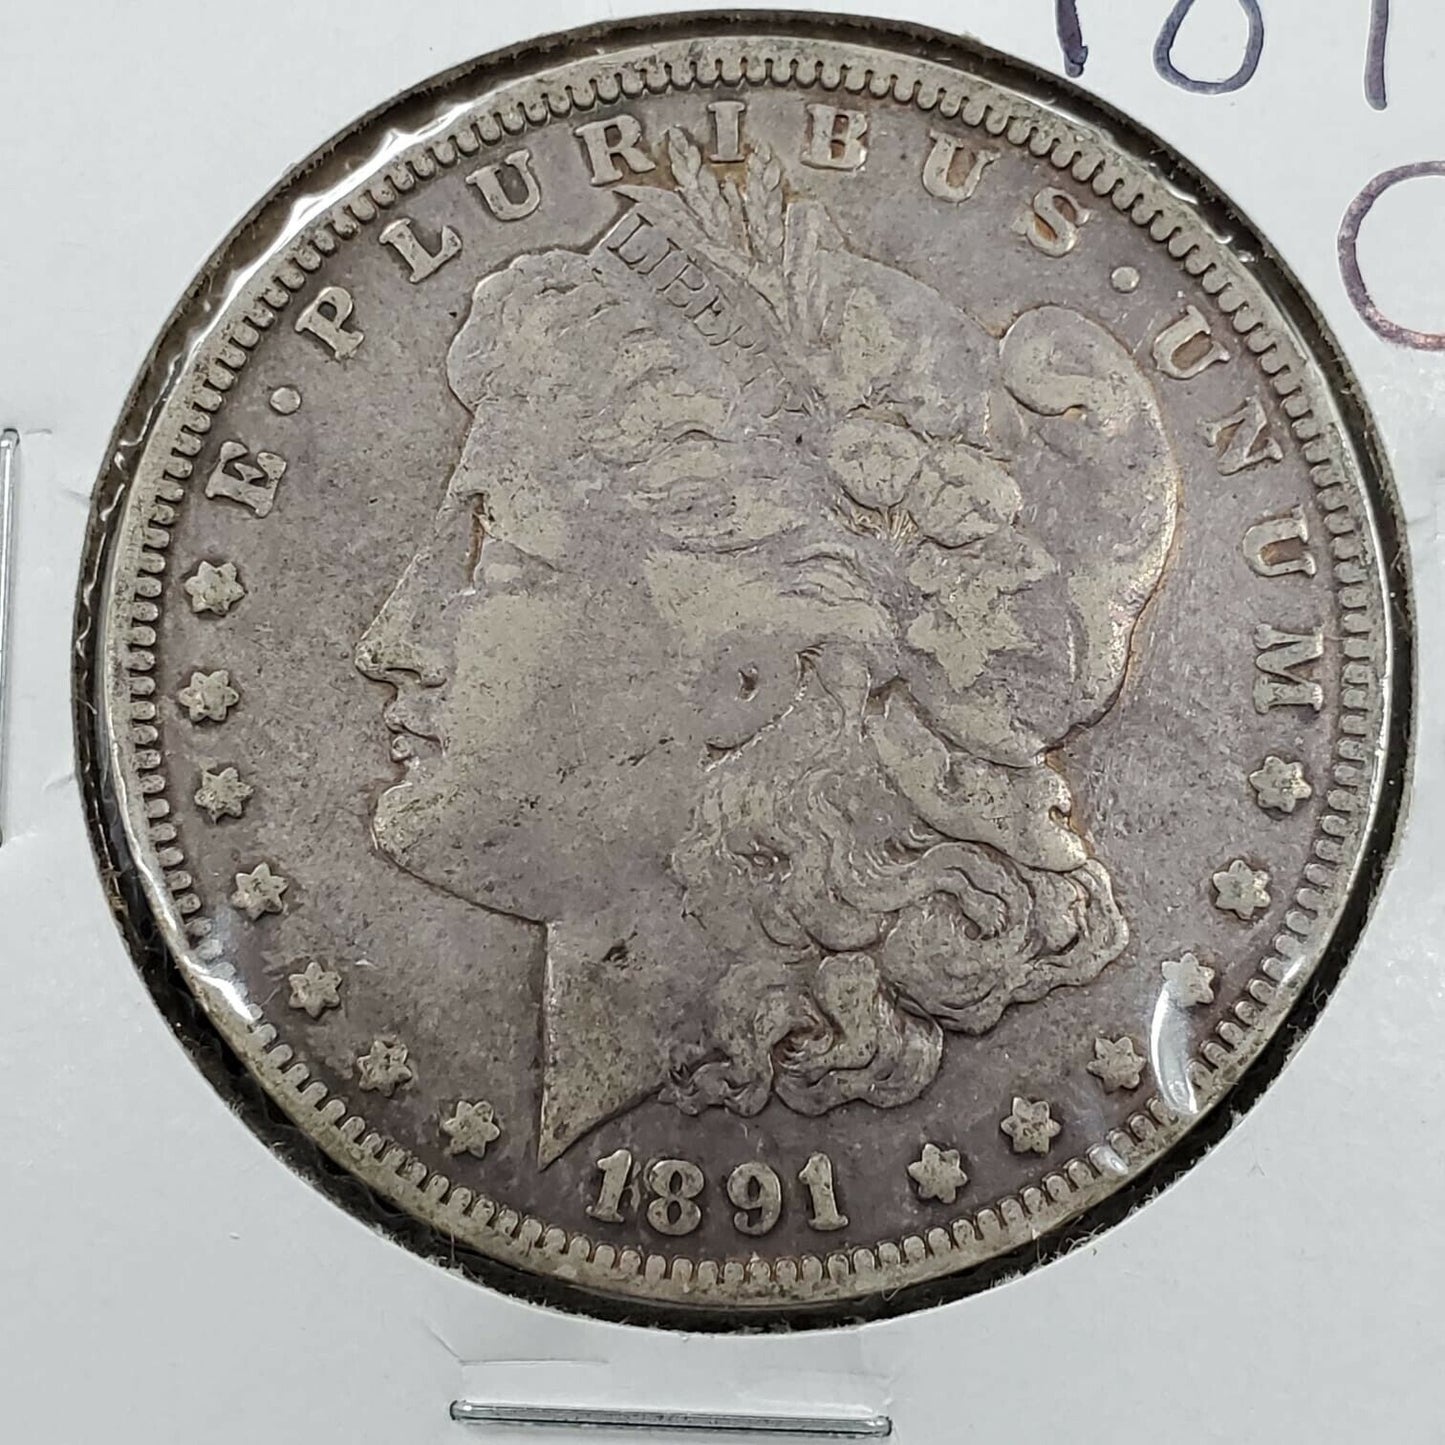 1891 O $1 Morgan Silver Eagle Dollar Coin Choice VG Very Good / F Fine Nice Circ